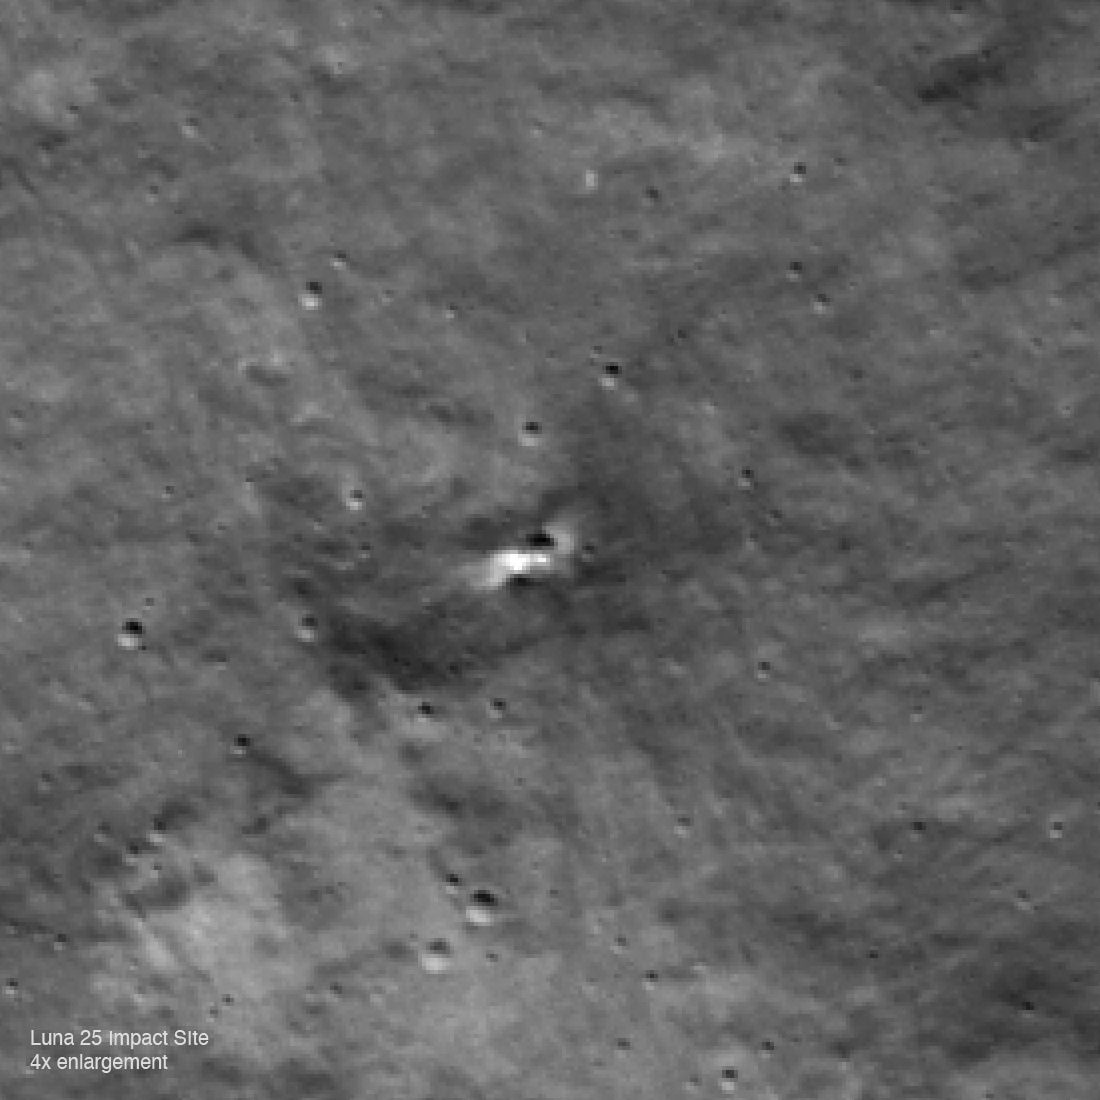 Изображение, увеличенное в четыре раза, сосредоточено на вероятном месте падения «Луны-25». Ширина изображения 275 метров; север находится вверху.